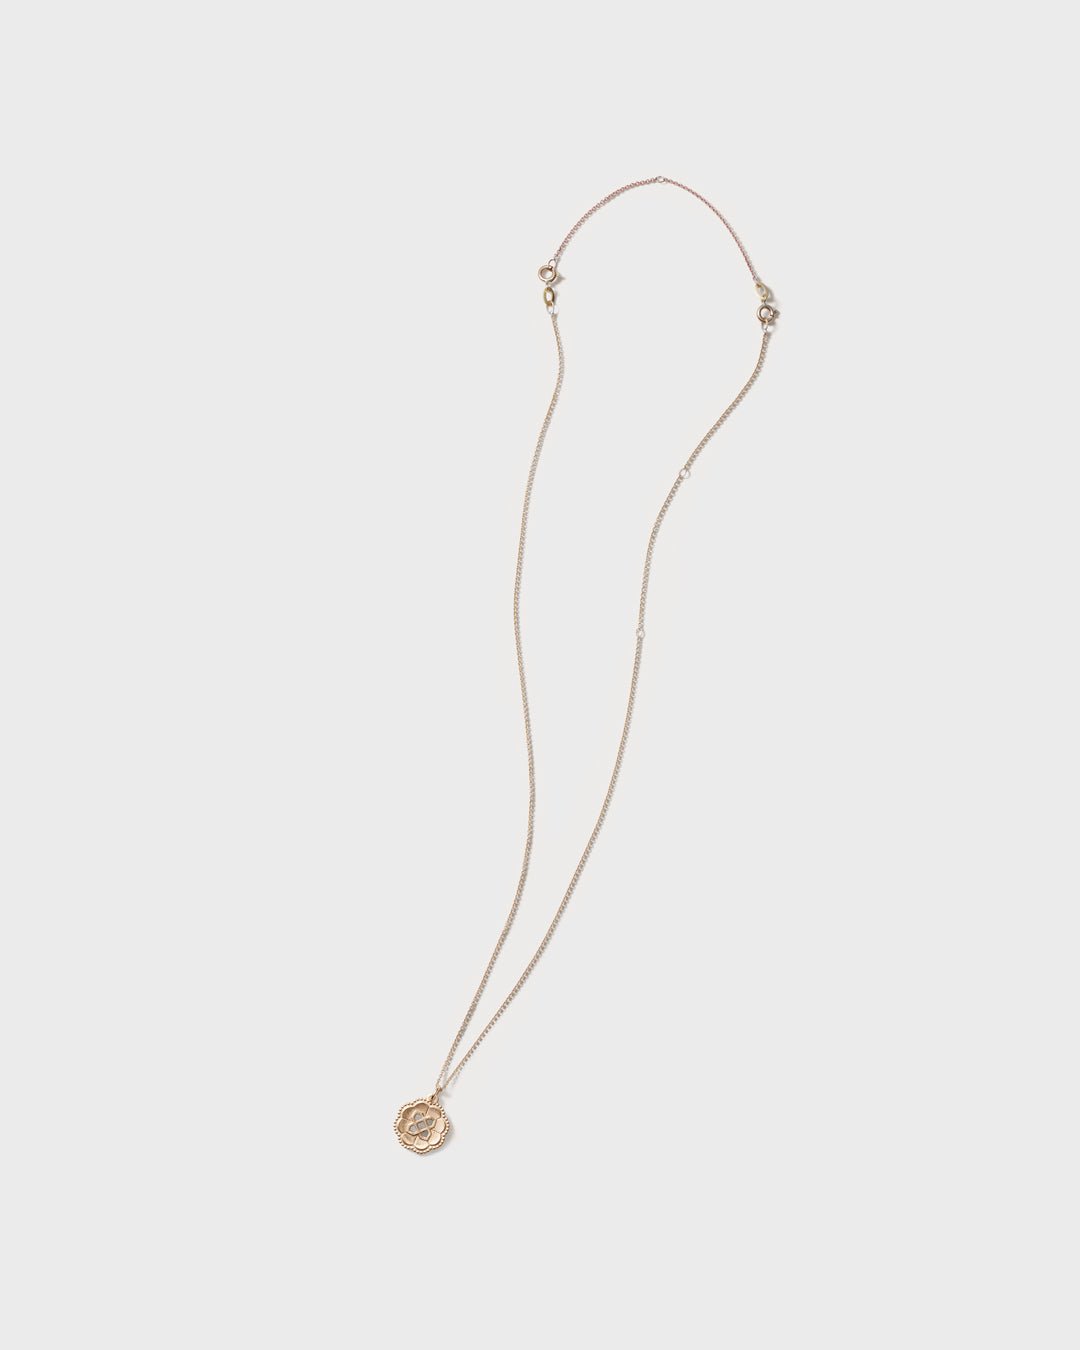 Amulet Pendant Sailor's Knot bronze